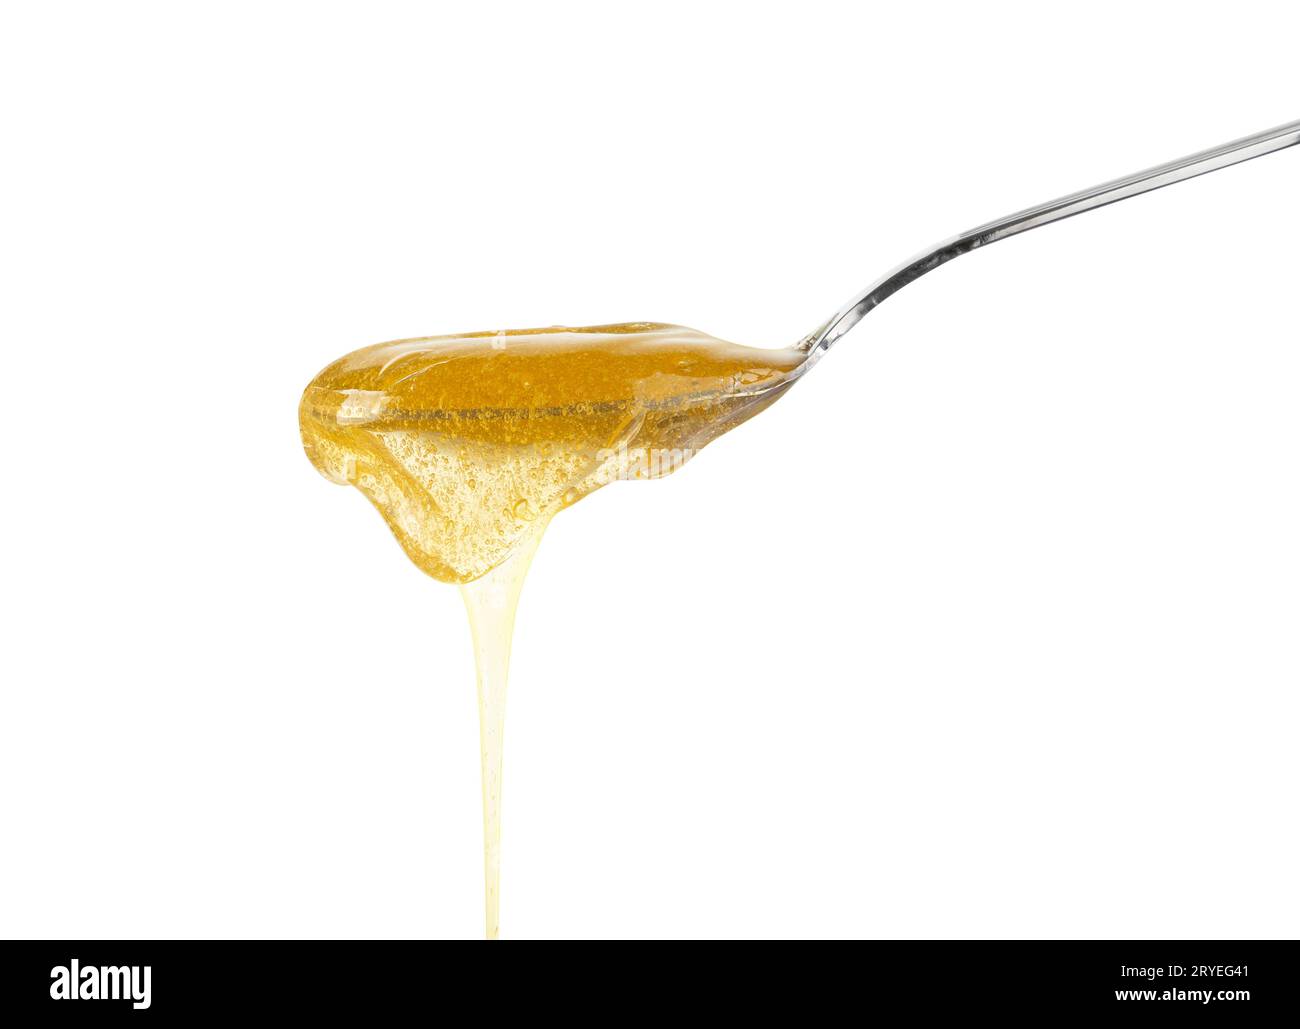 Chiudere il miele che scorre dal cucchiaio di metallo su bianco Foto Stock